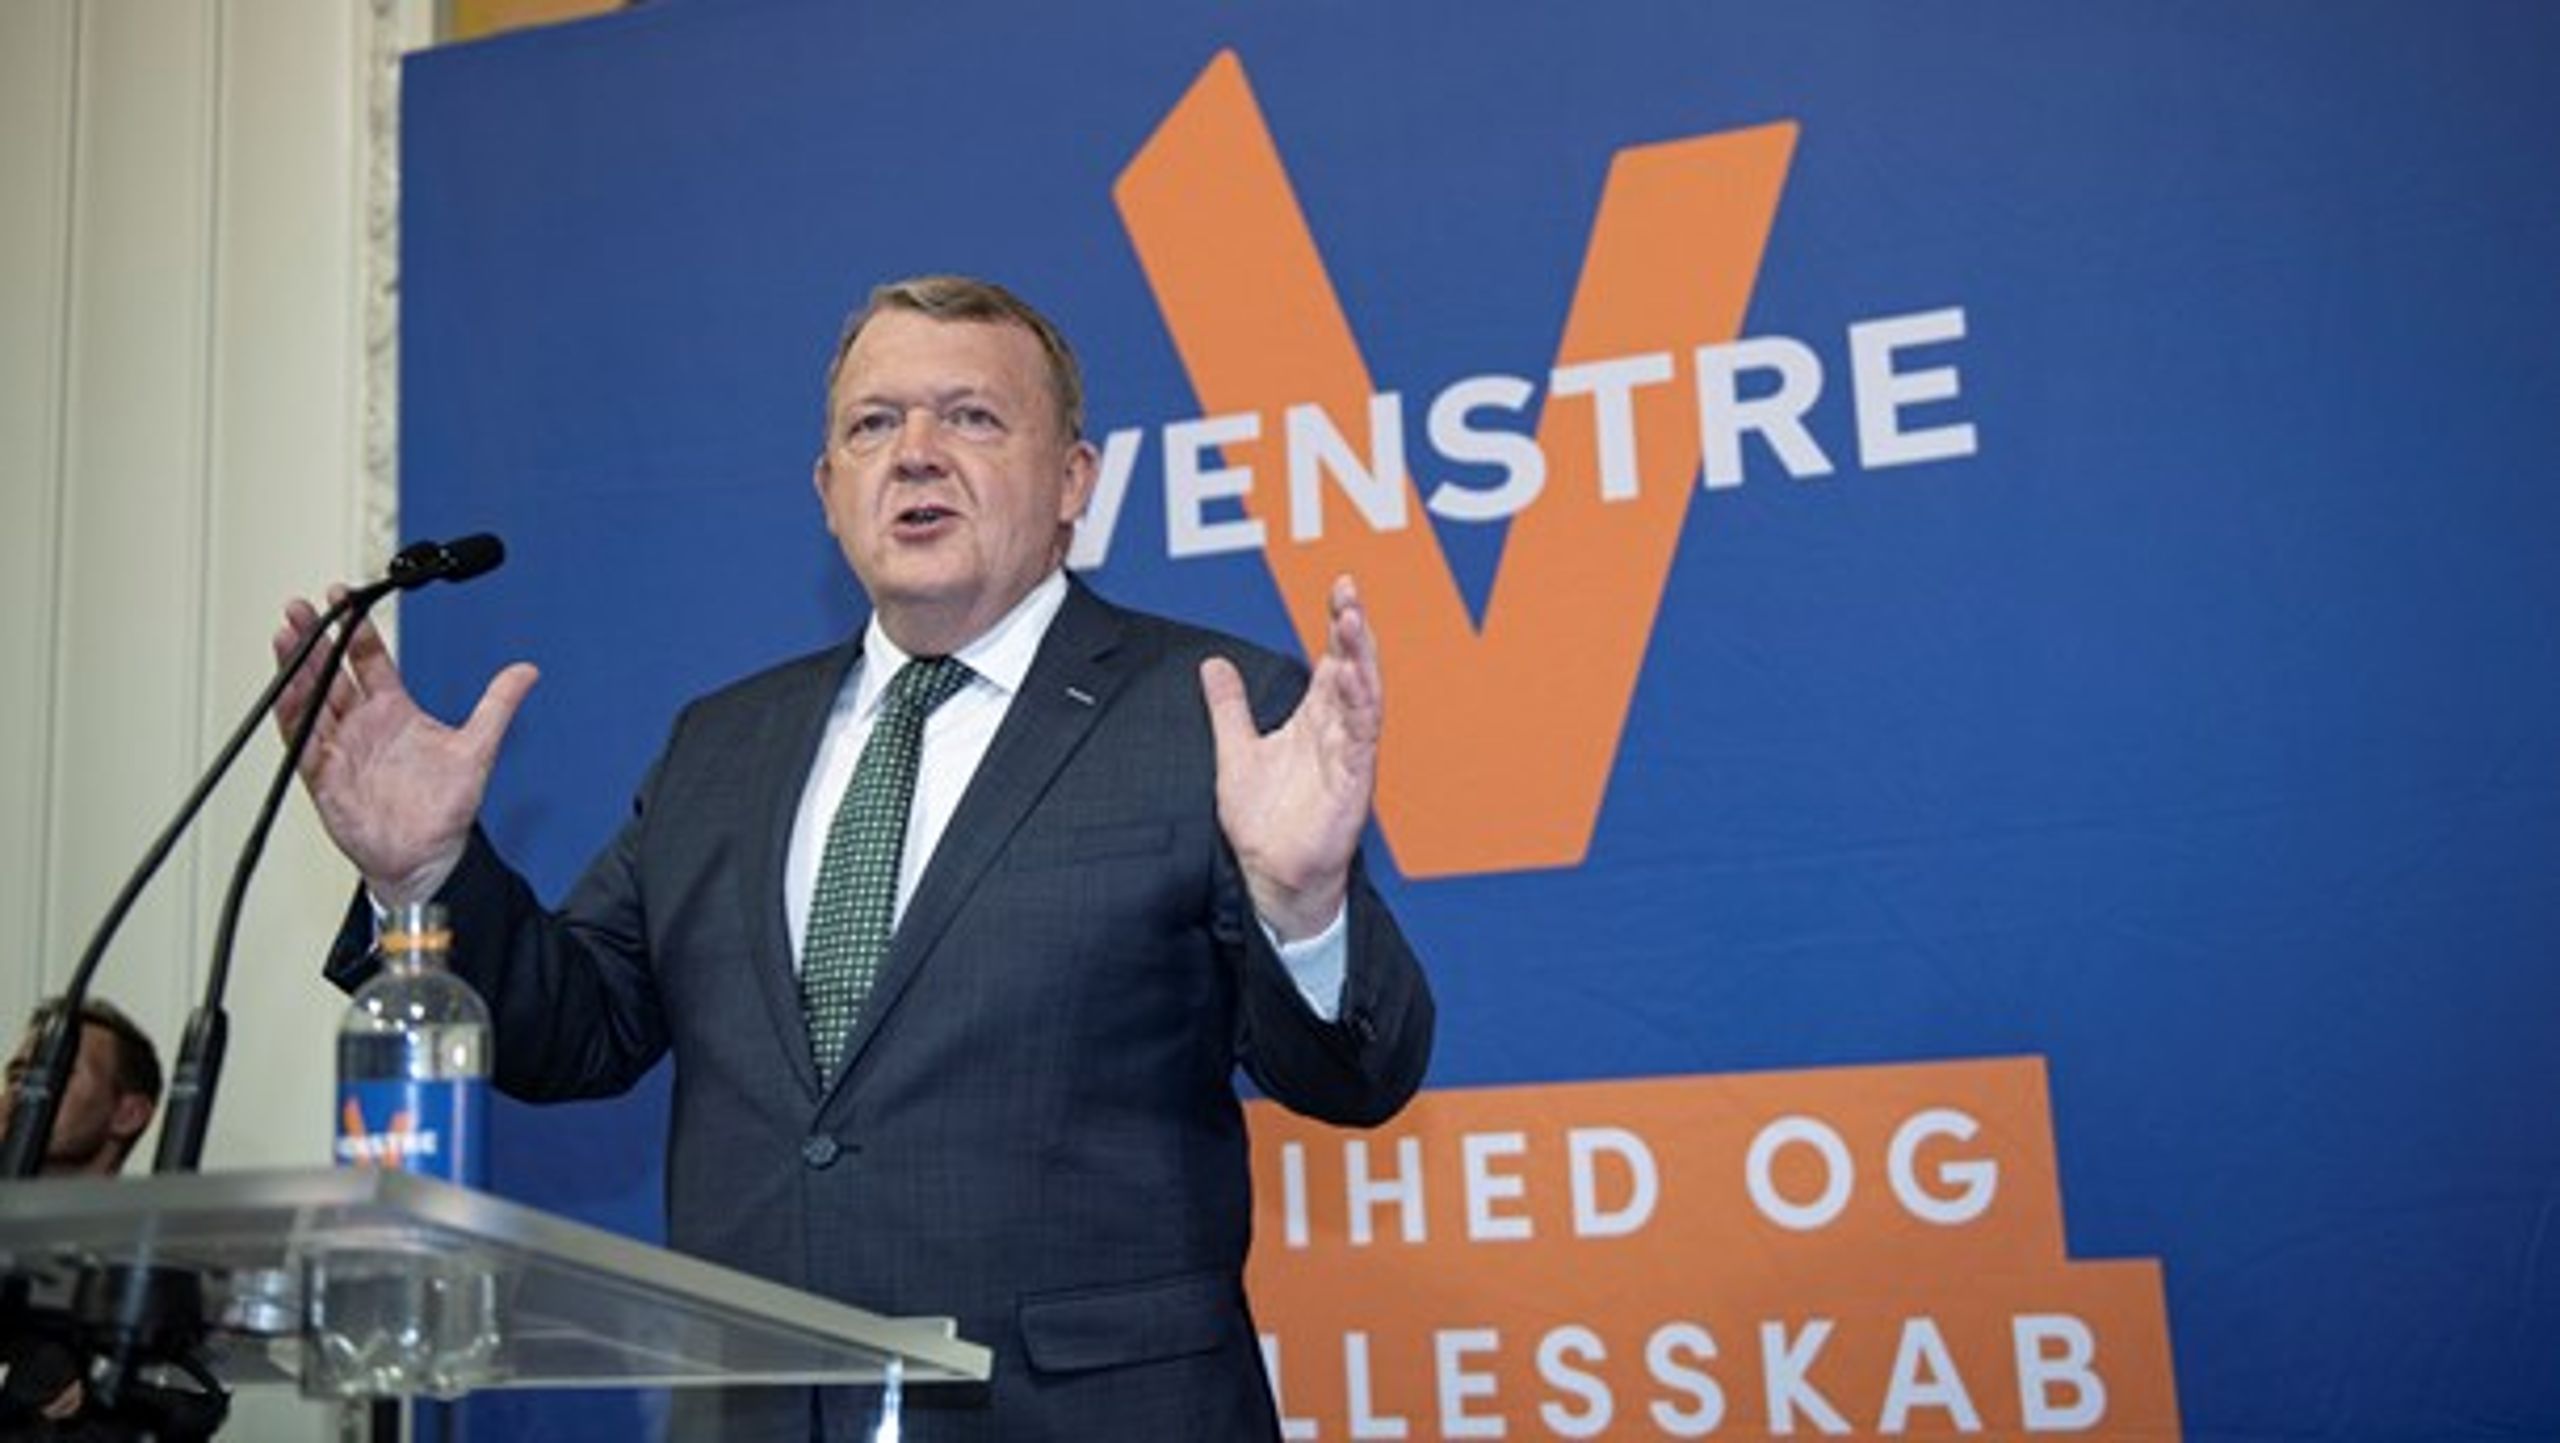 Lars Løkke Rasmussen er fortid i Venstre, men ingen vil blive forbavset, hvis den gamle travhest tager endnu en tur i manegen.